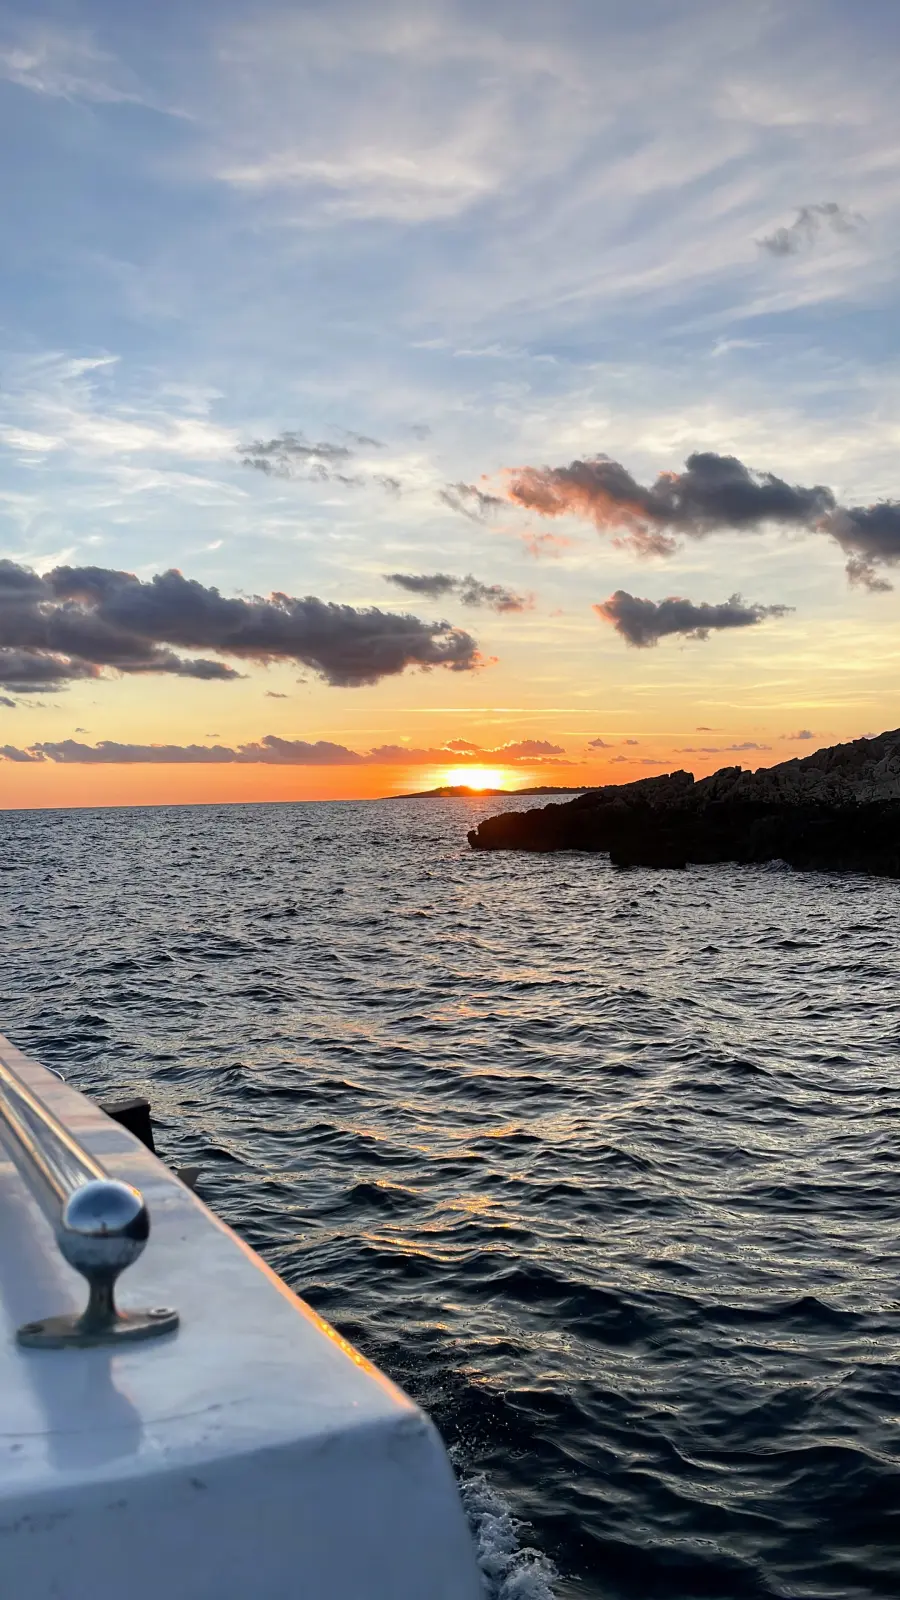 Sonnenuntergang über dem Meer, von einem kleinen Boot aus betrachtet